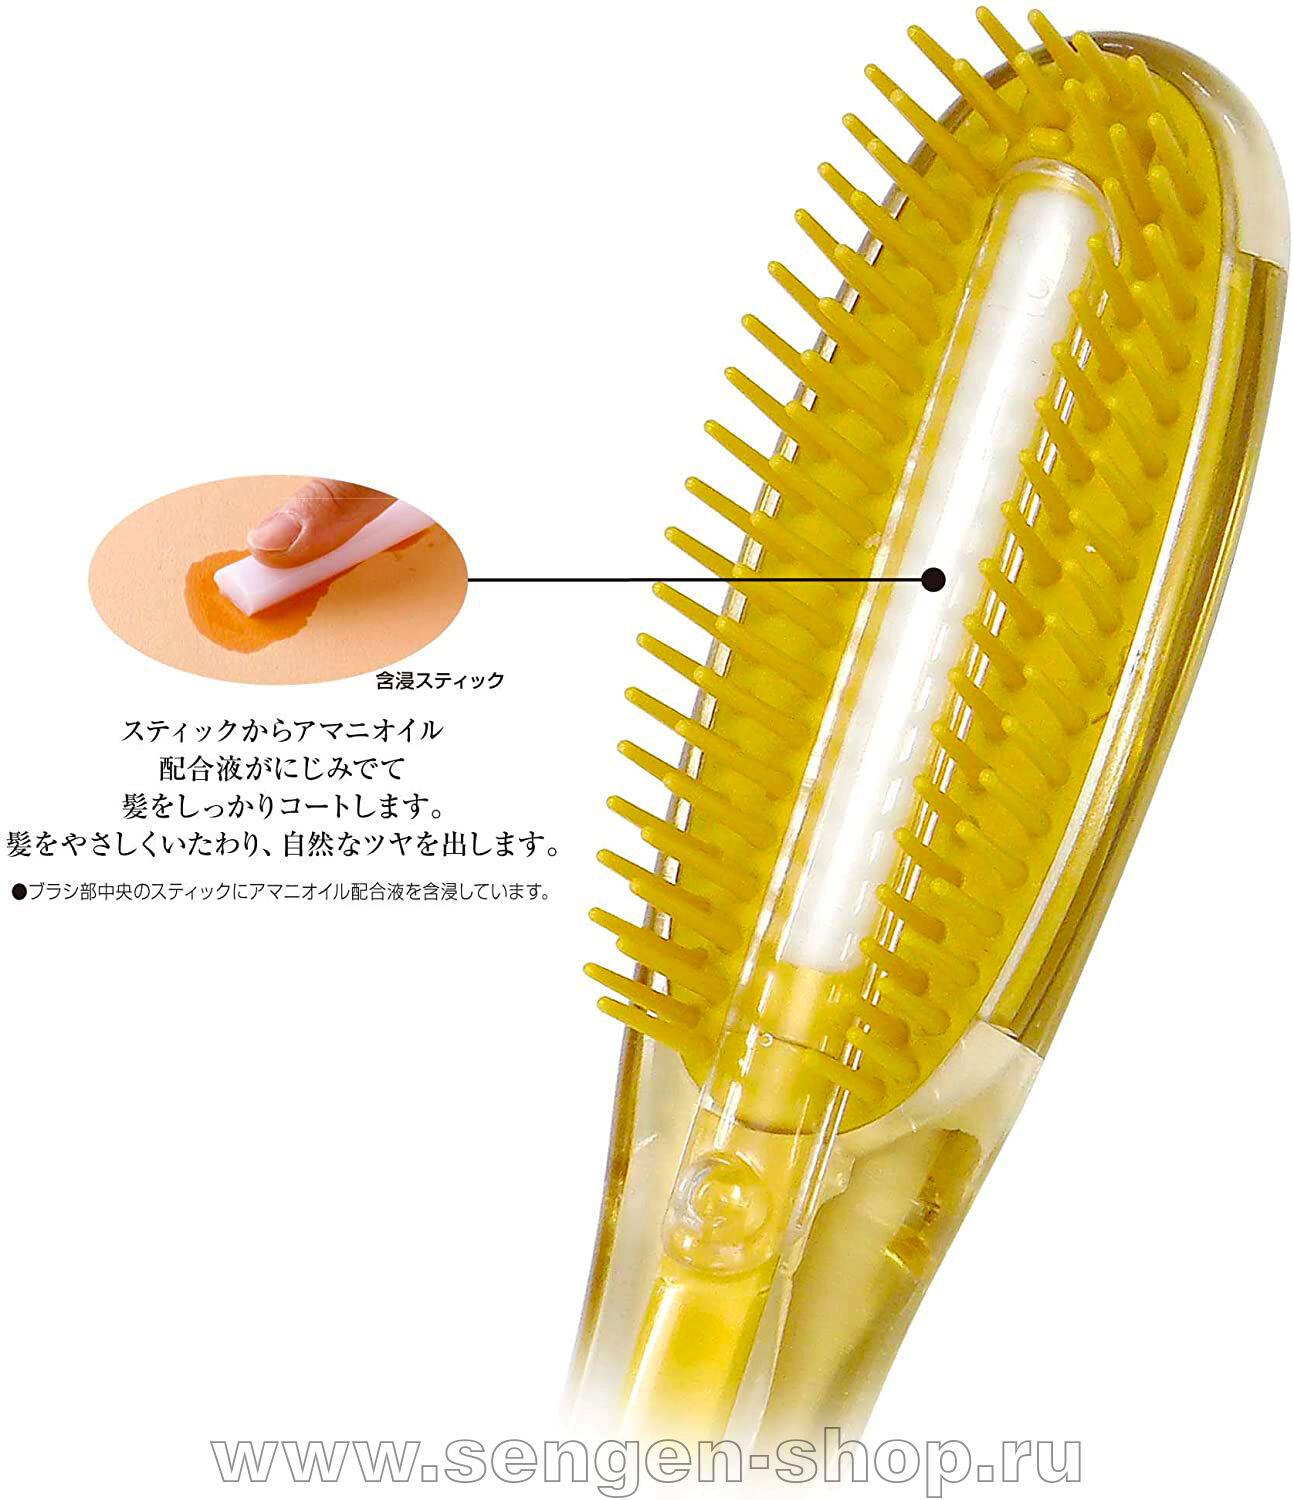 Ikemoto brush щетка для ухода и восстановления поврежденных волос с гиалуроновой кислотой